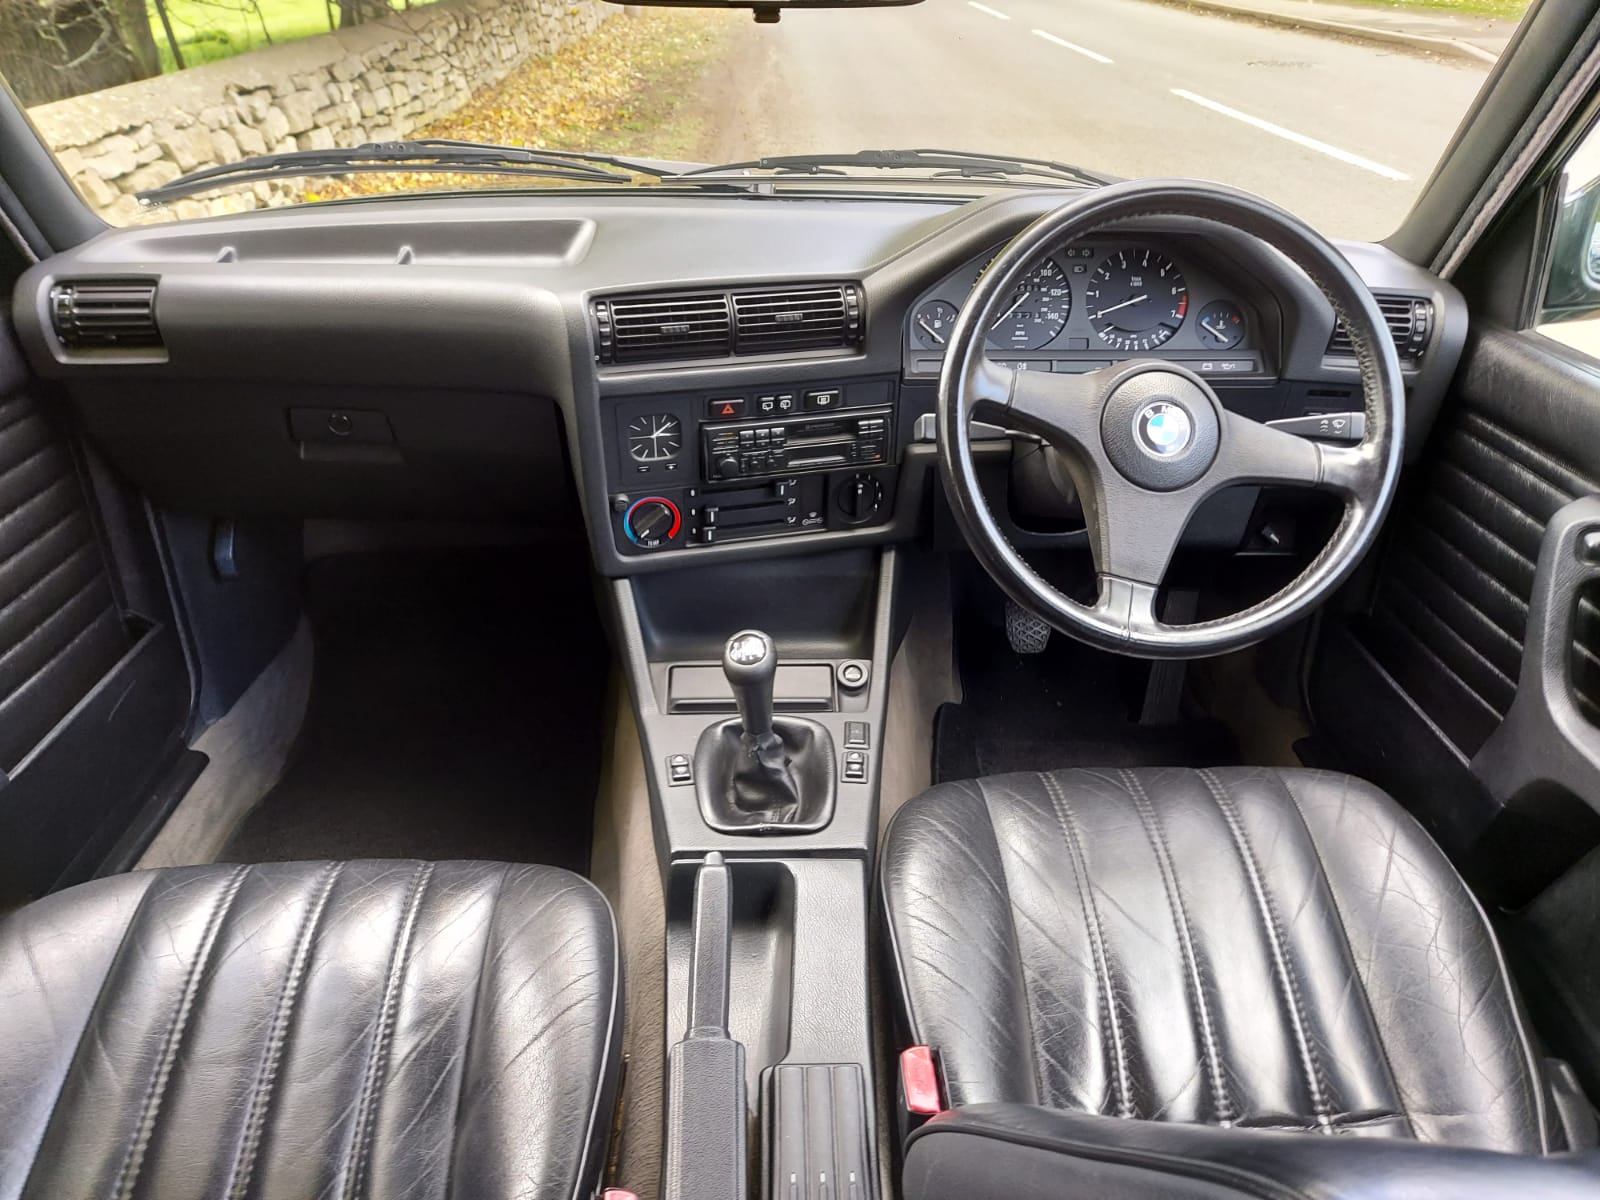 1990 BMW E30 320i Touring - Image 10 of 12